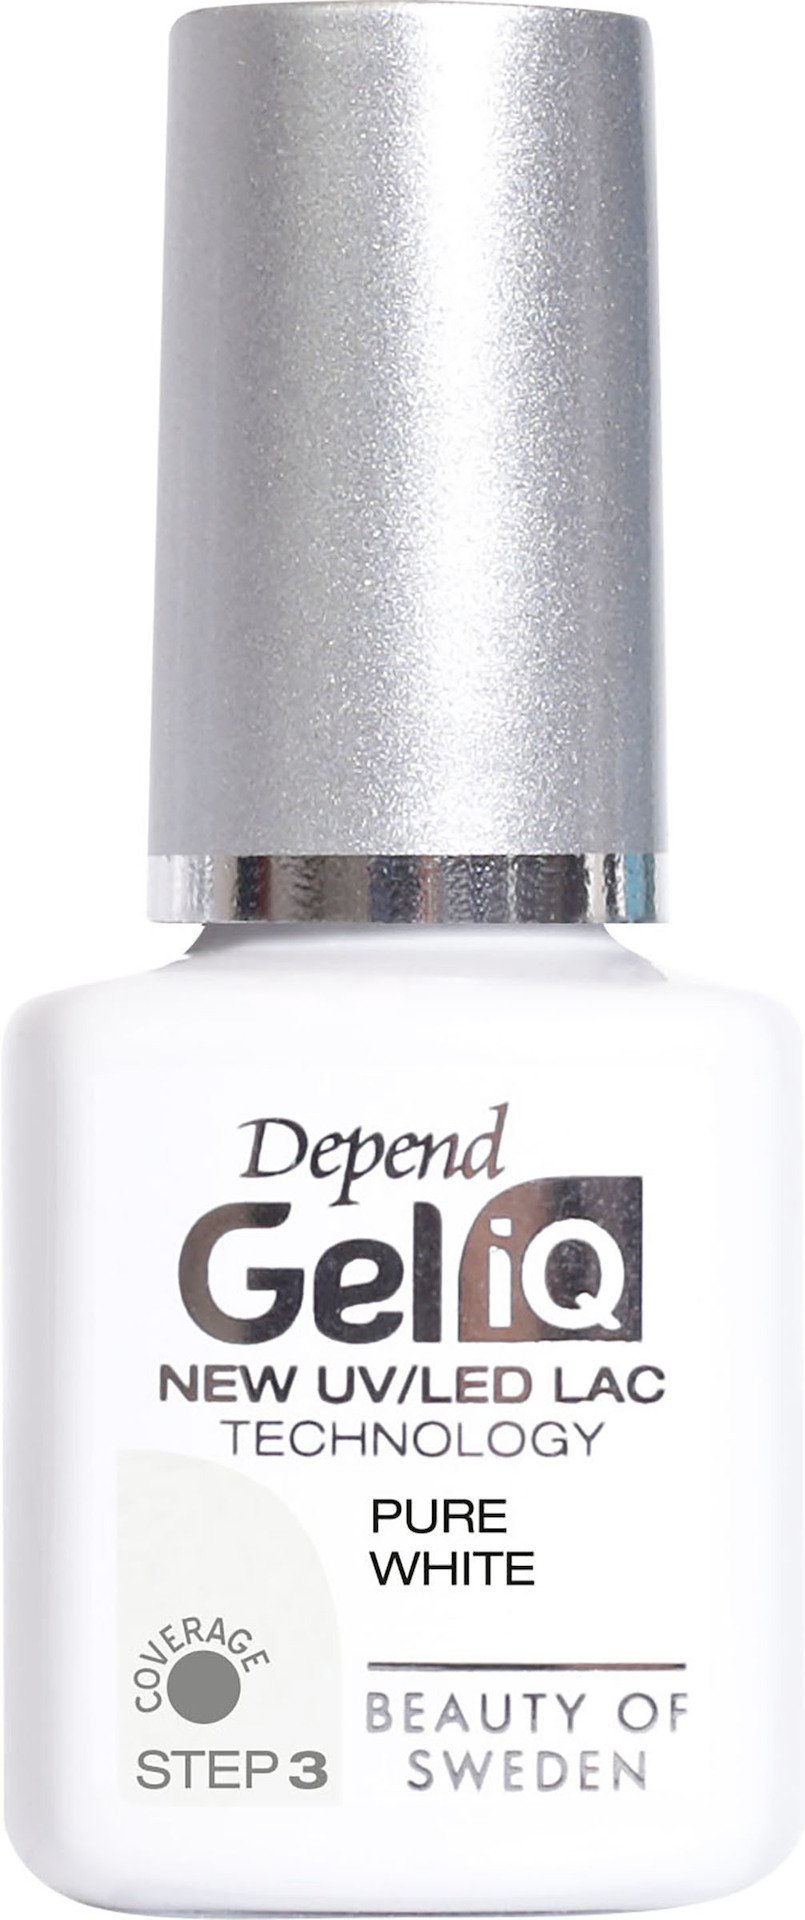 Depend Gel iQ Pure White 5 ml